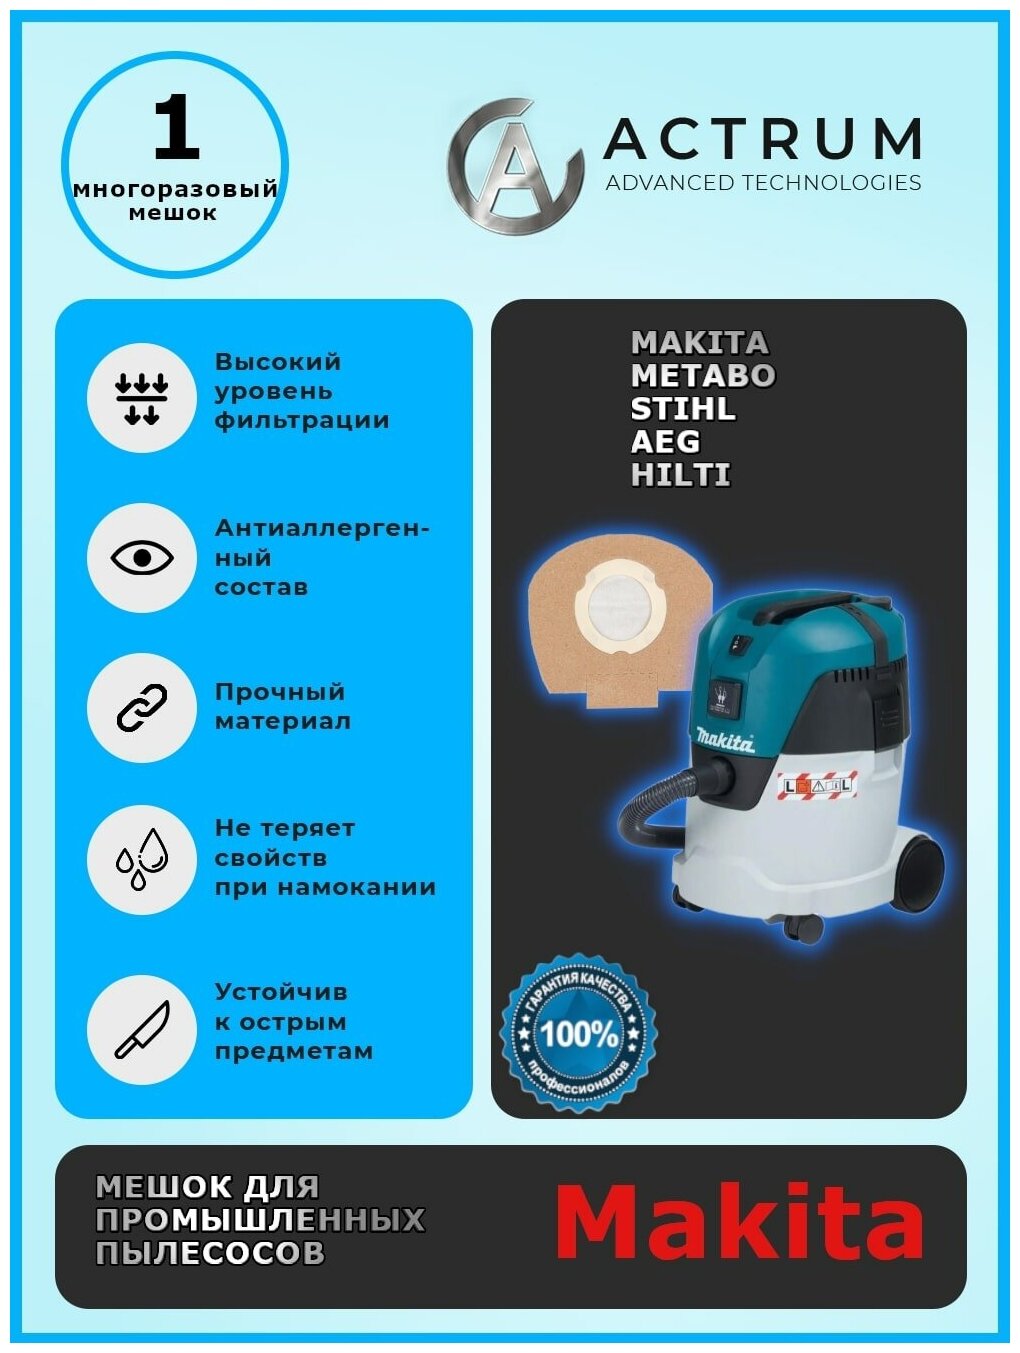 Профессиональный многоразовый мешок-пылесборник AK073M для промышленных пылесосов MAKITA METABO STIHL AEG HILTI + 1 сменный мешок в подарок!